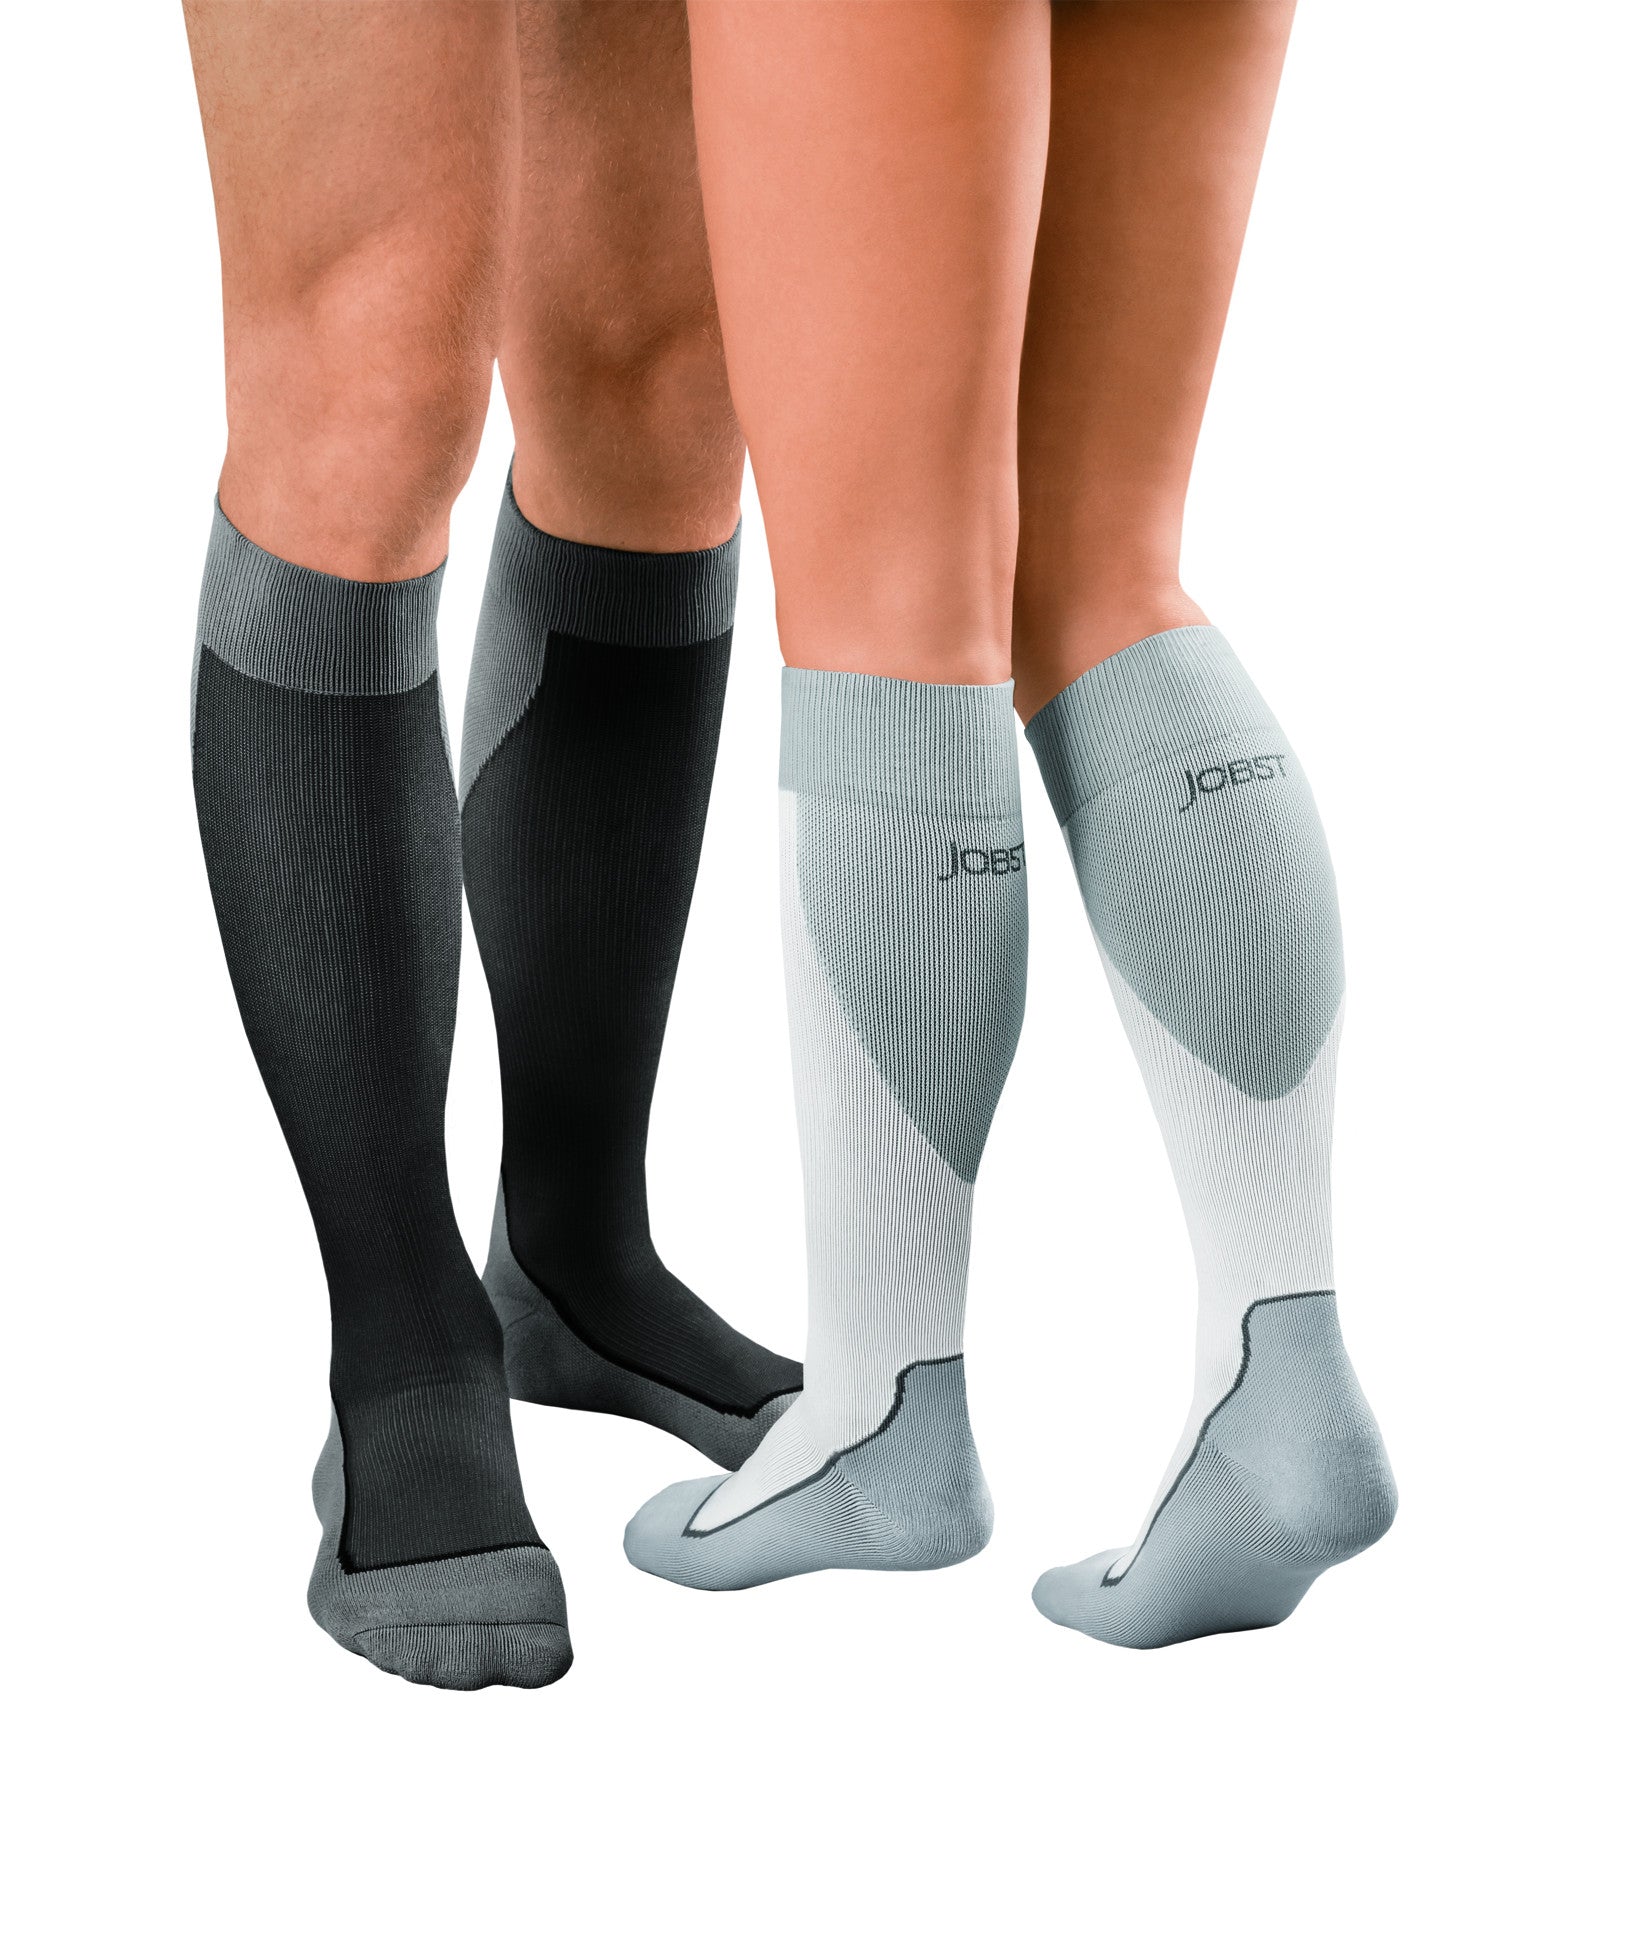 JOBST Sport Knee High Socks 15-20 mmHg